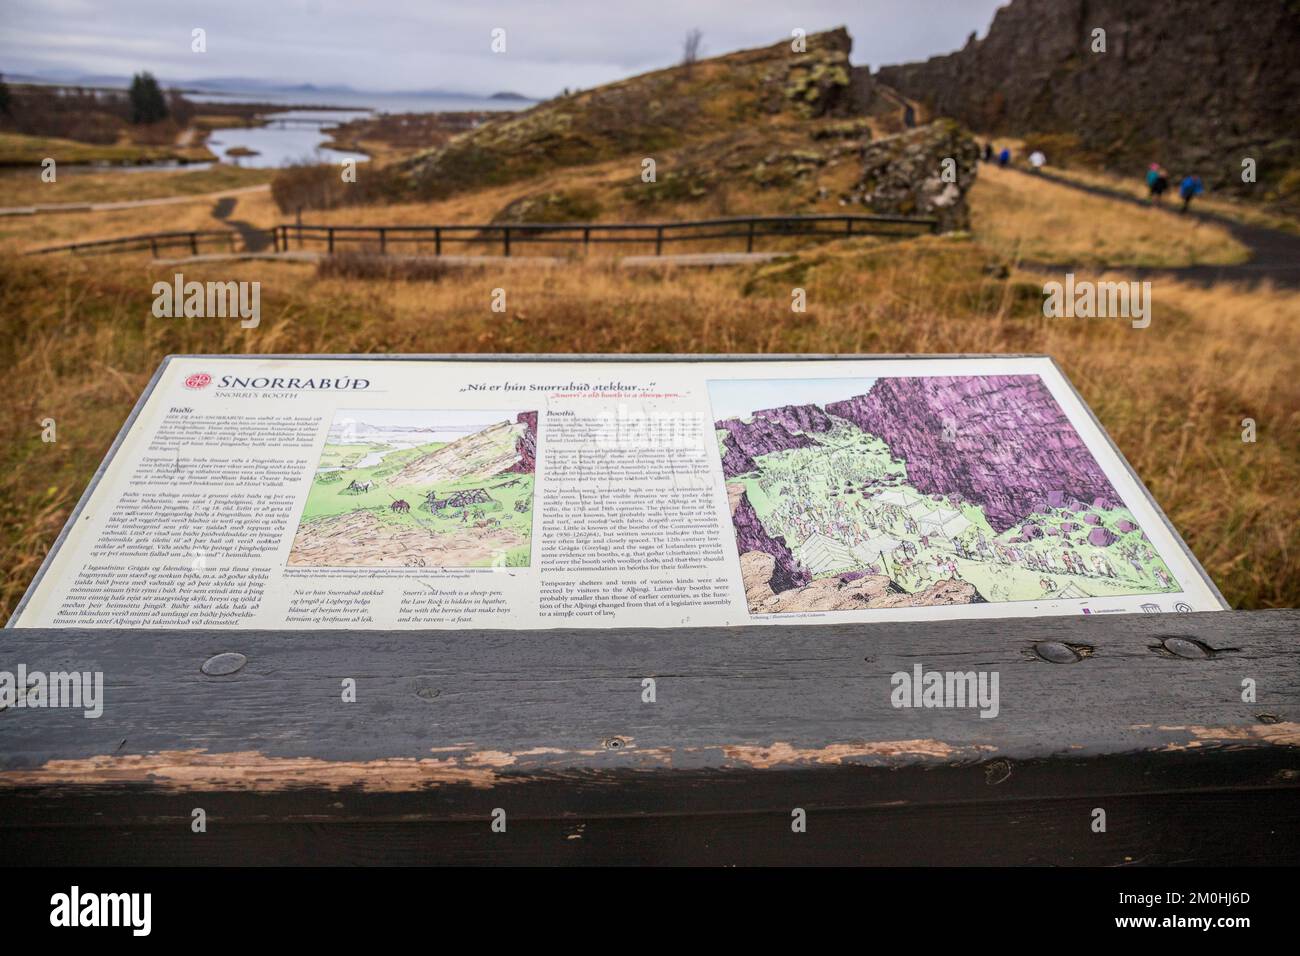 Islande, Sudurland, Parc national de Thingvellir, classé au patrimoine mondial de l'UNESCO, amphithéâtre où le Parlement islandais Al?ing a été fondé en 930, est devenu un parc national en 1928, situé sur l'Almannagj? Faute, à la séparation des plaques tectoniques américaines et eurasiennes Banque D'Images